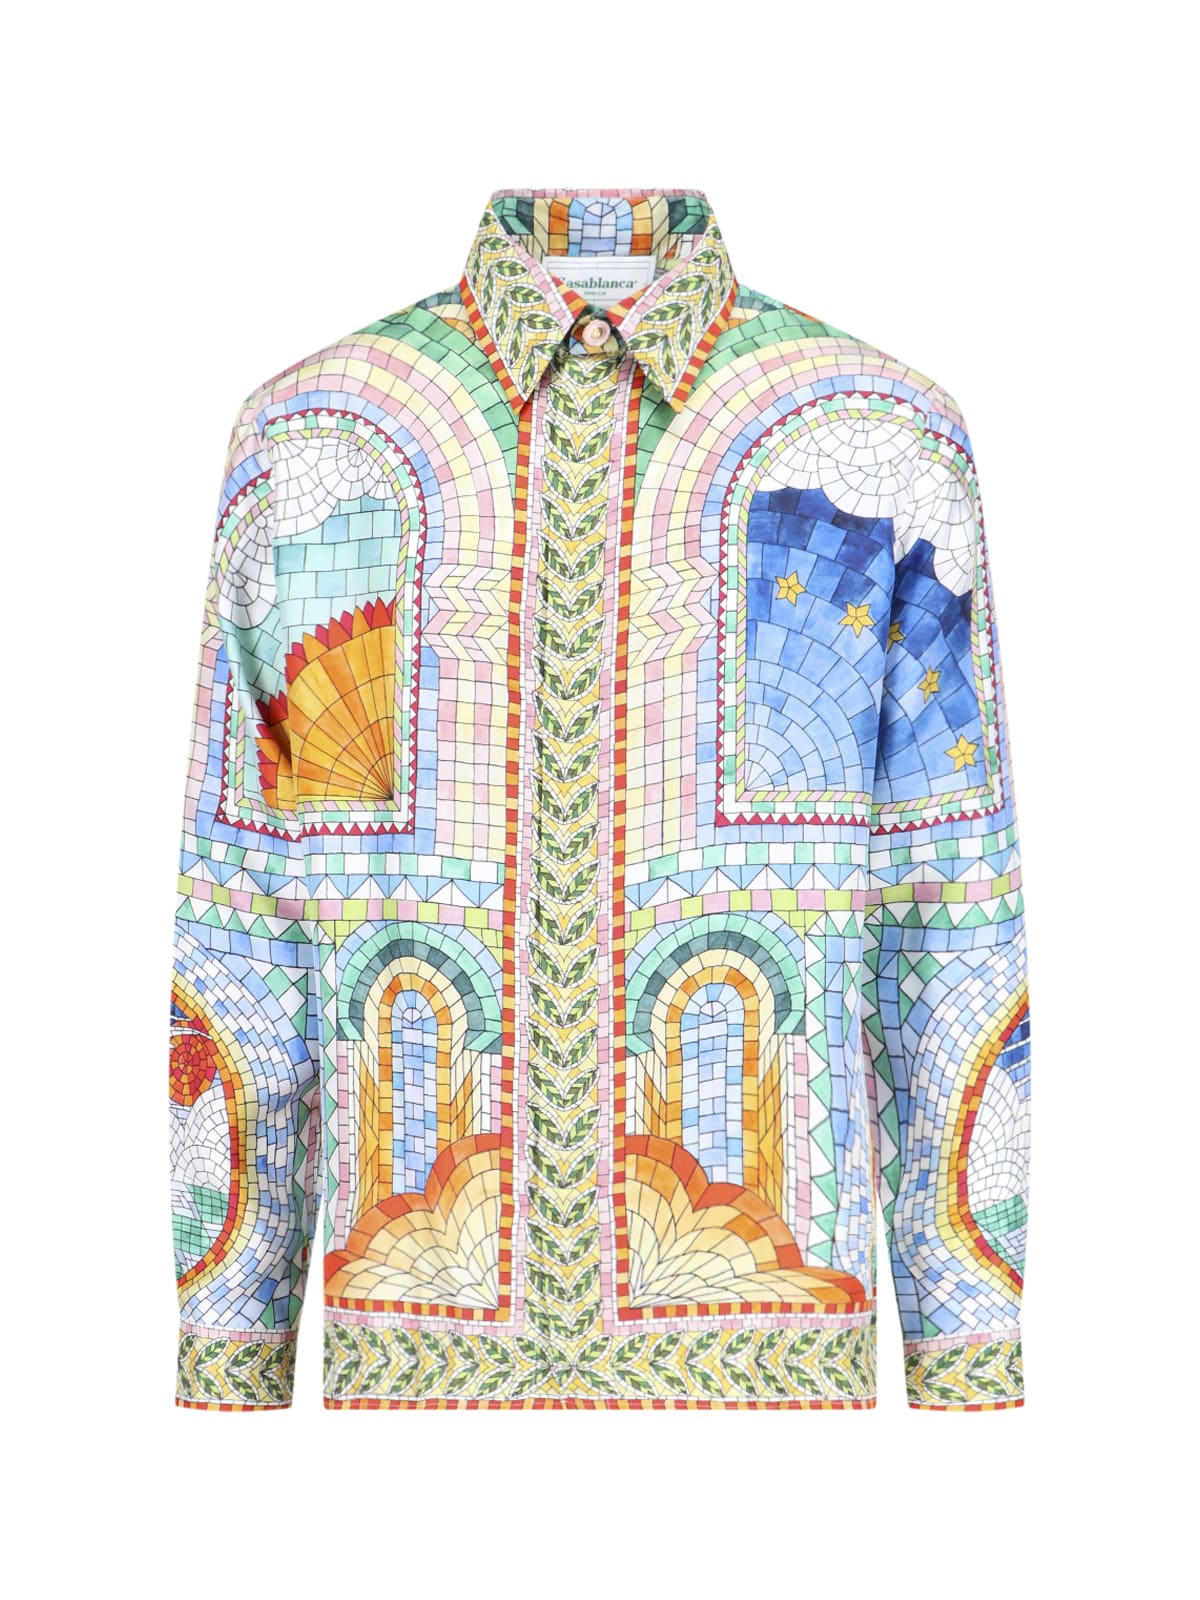 Casablanca Mosaic De Damas Shirt In Multicolor